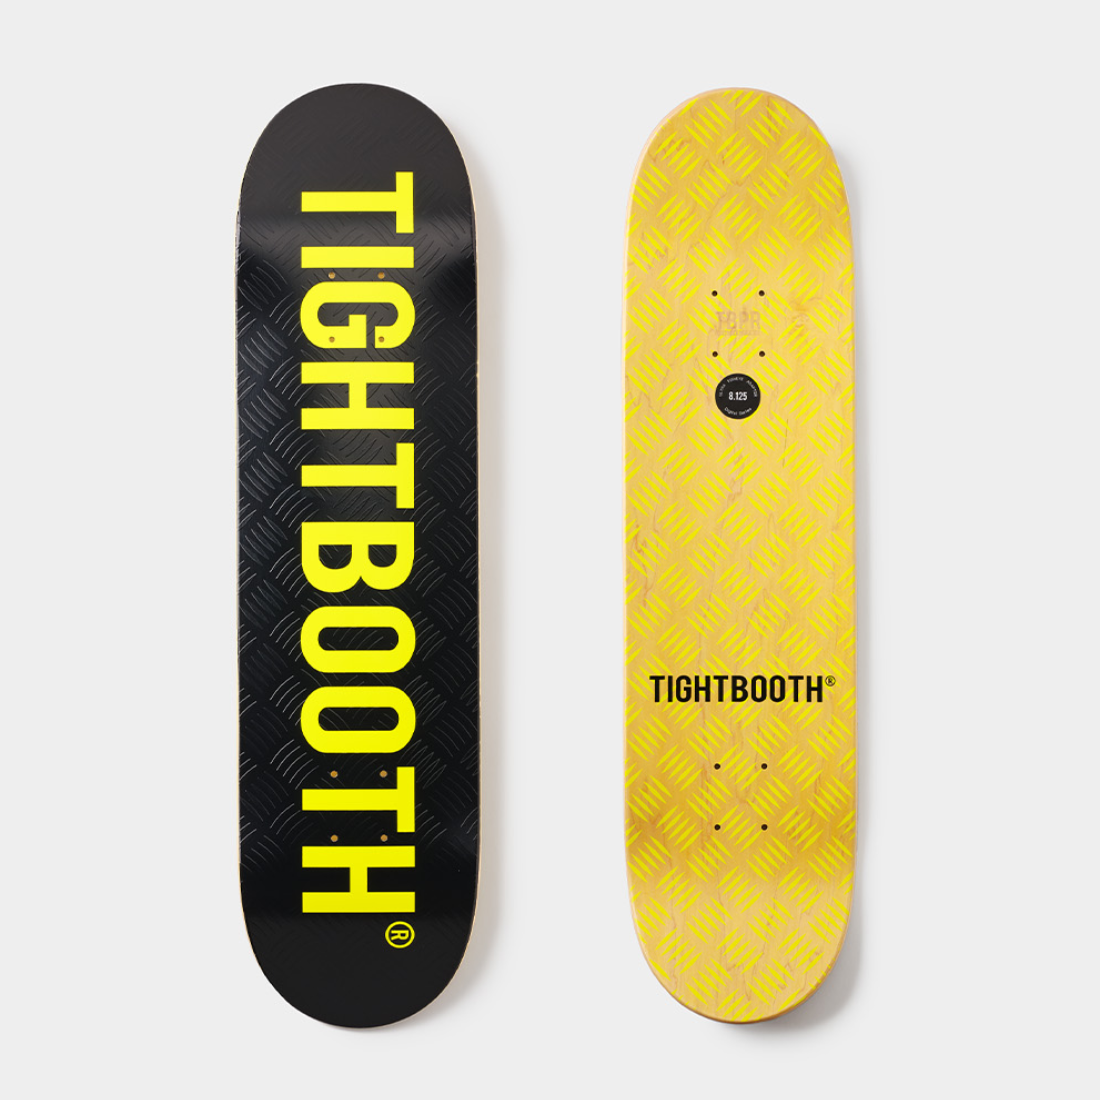 tightbooth タイトブース デッキ 8.125 - スケートボード